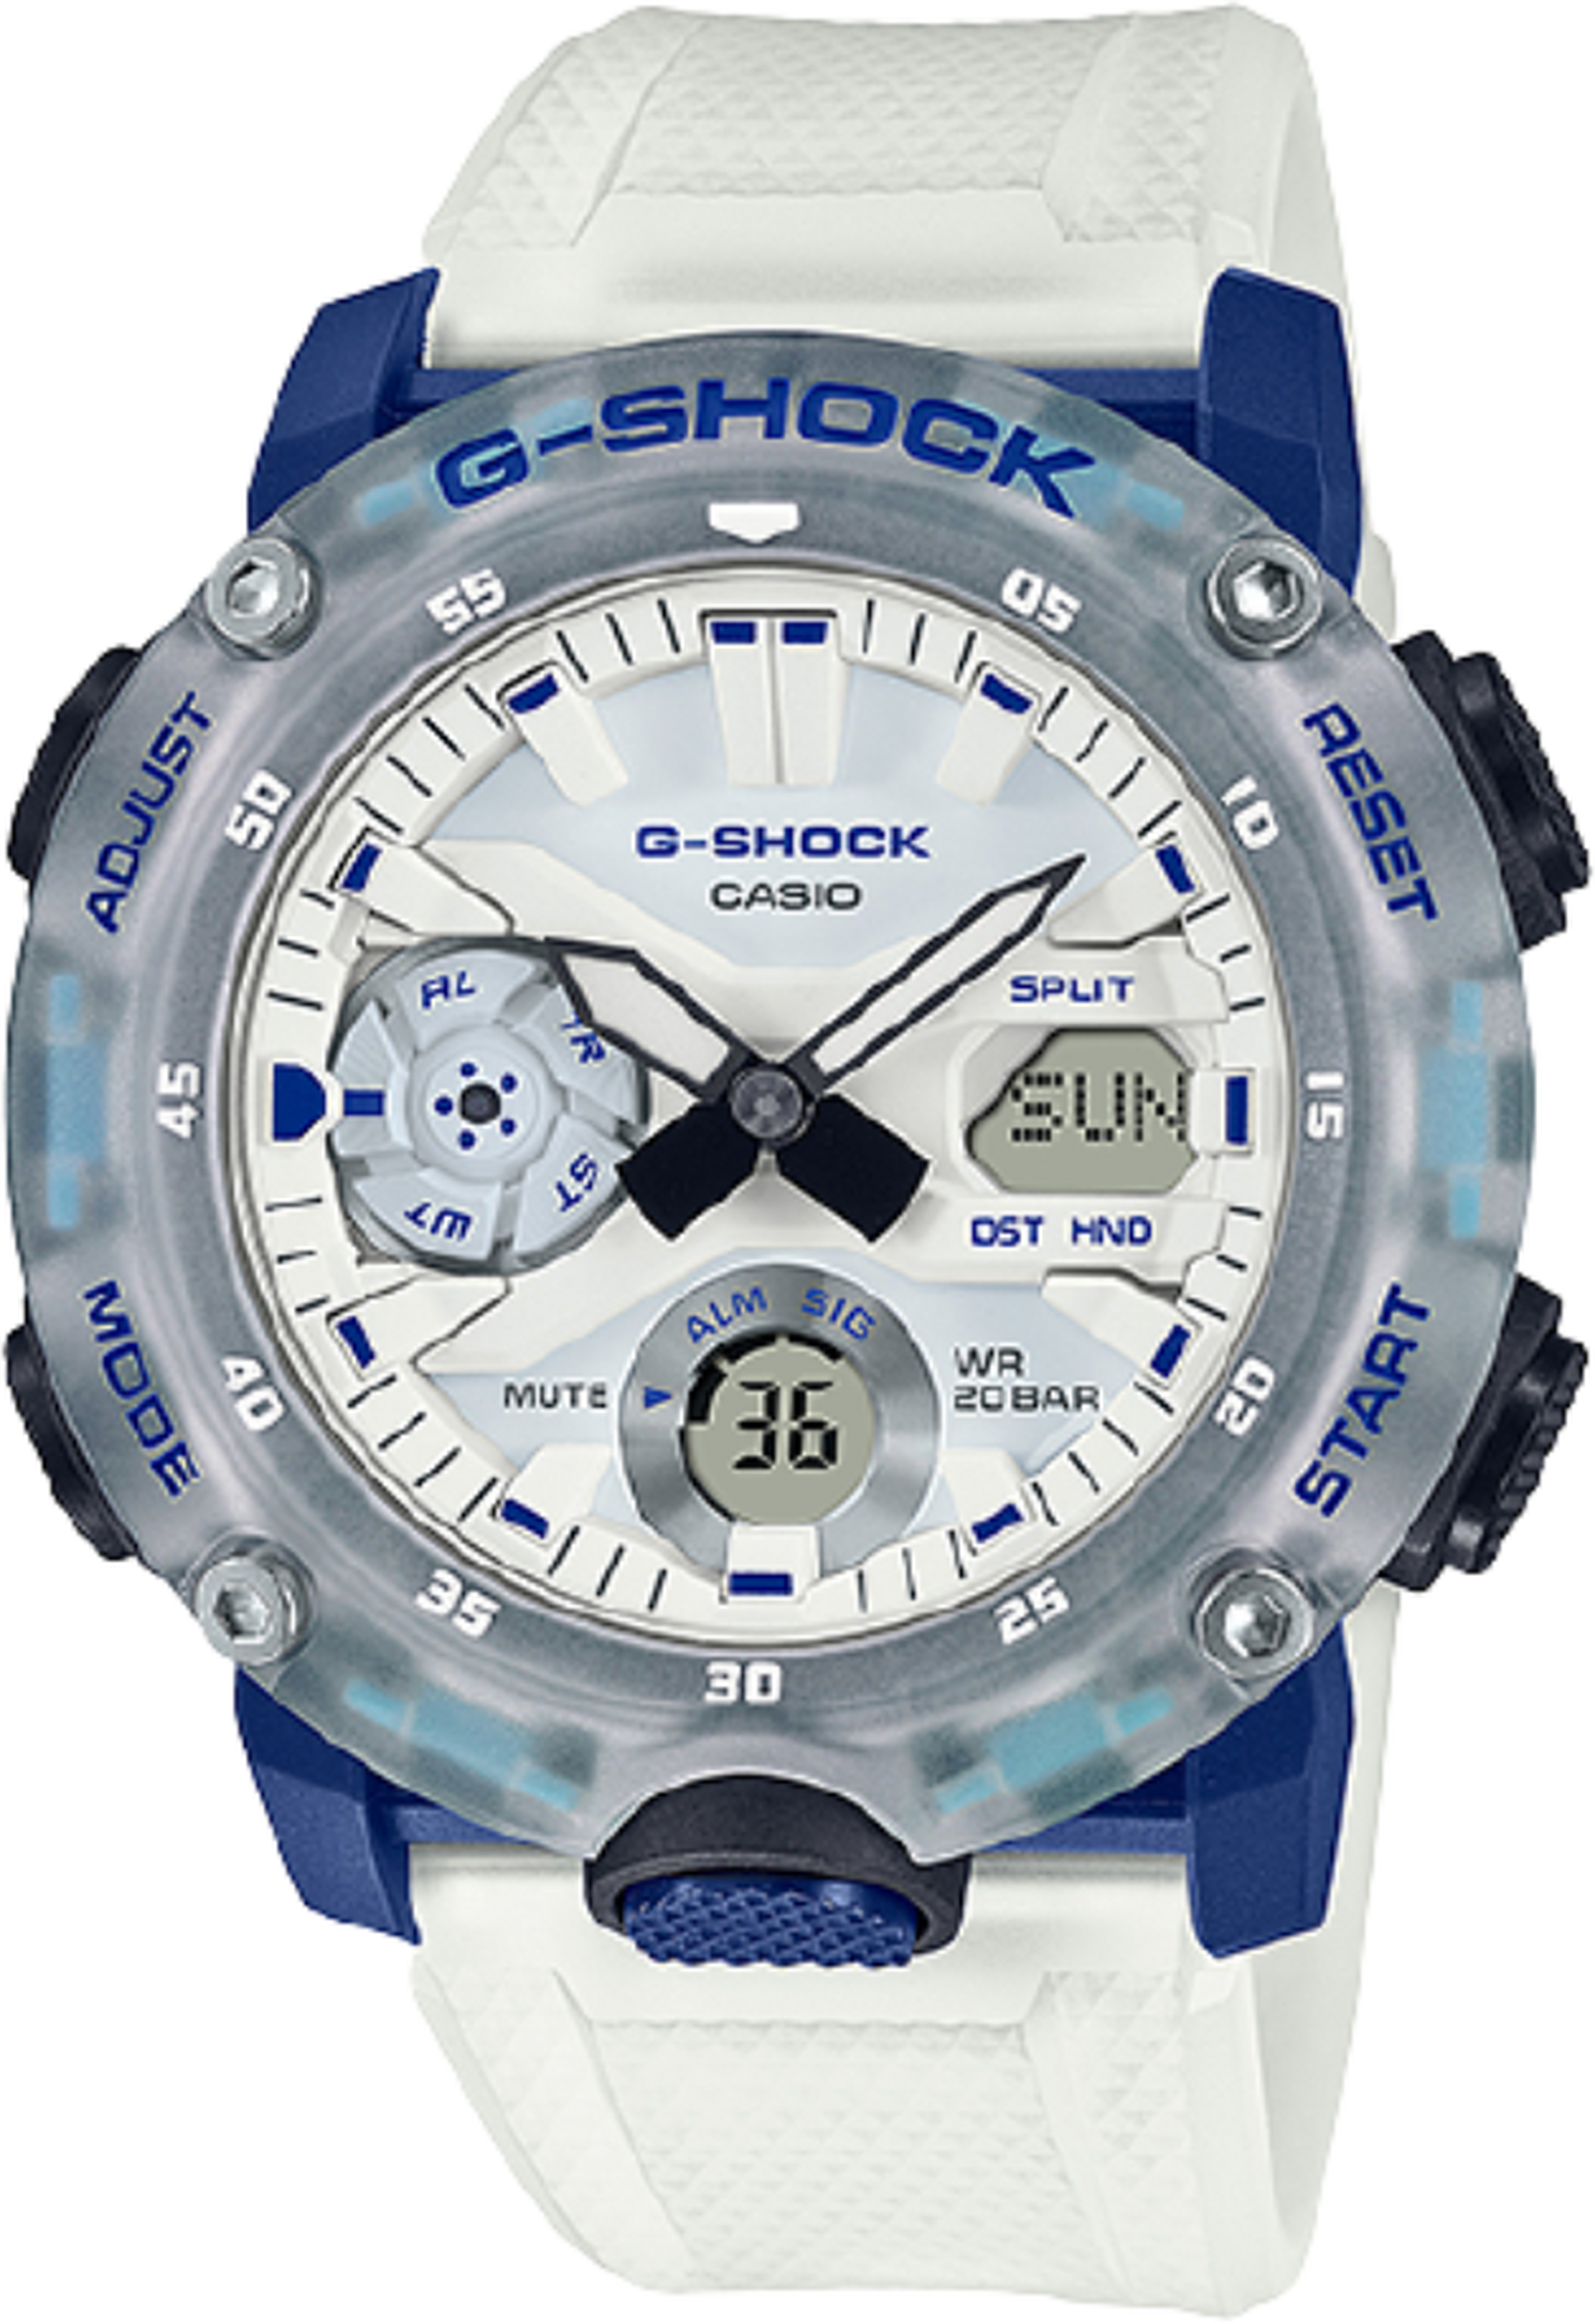 ساعة كاسيو جي شوك التناظرية / الرقمية الرياضية الرجالية بحجم 51 ملم (GA-2000HC-7ADR)